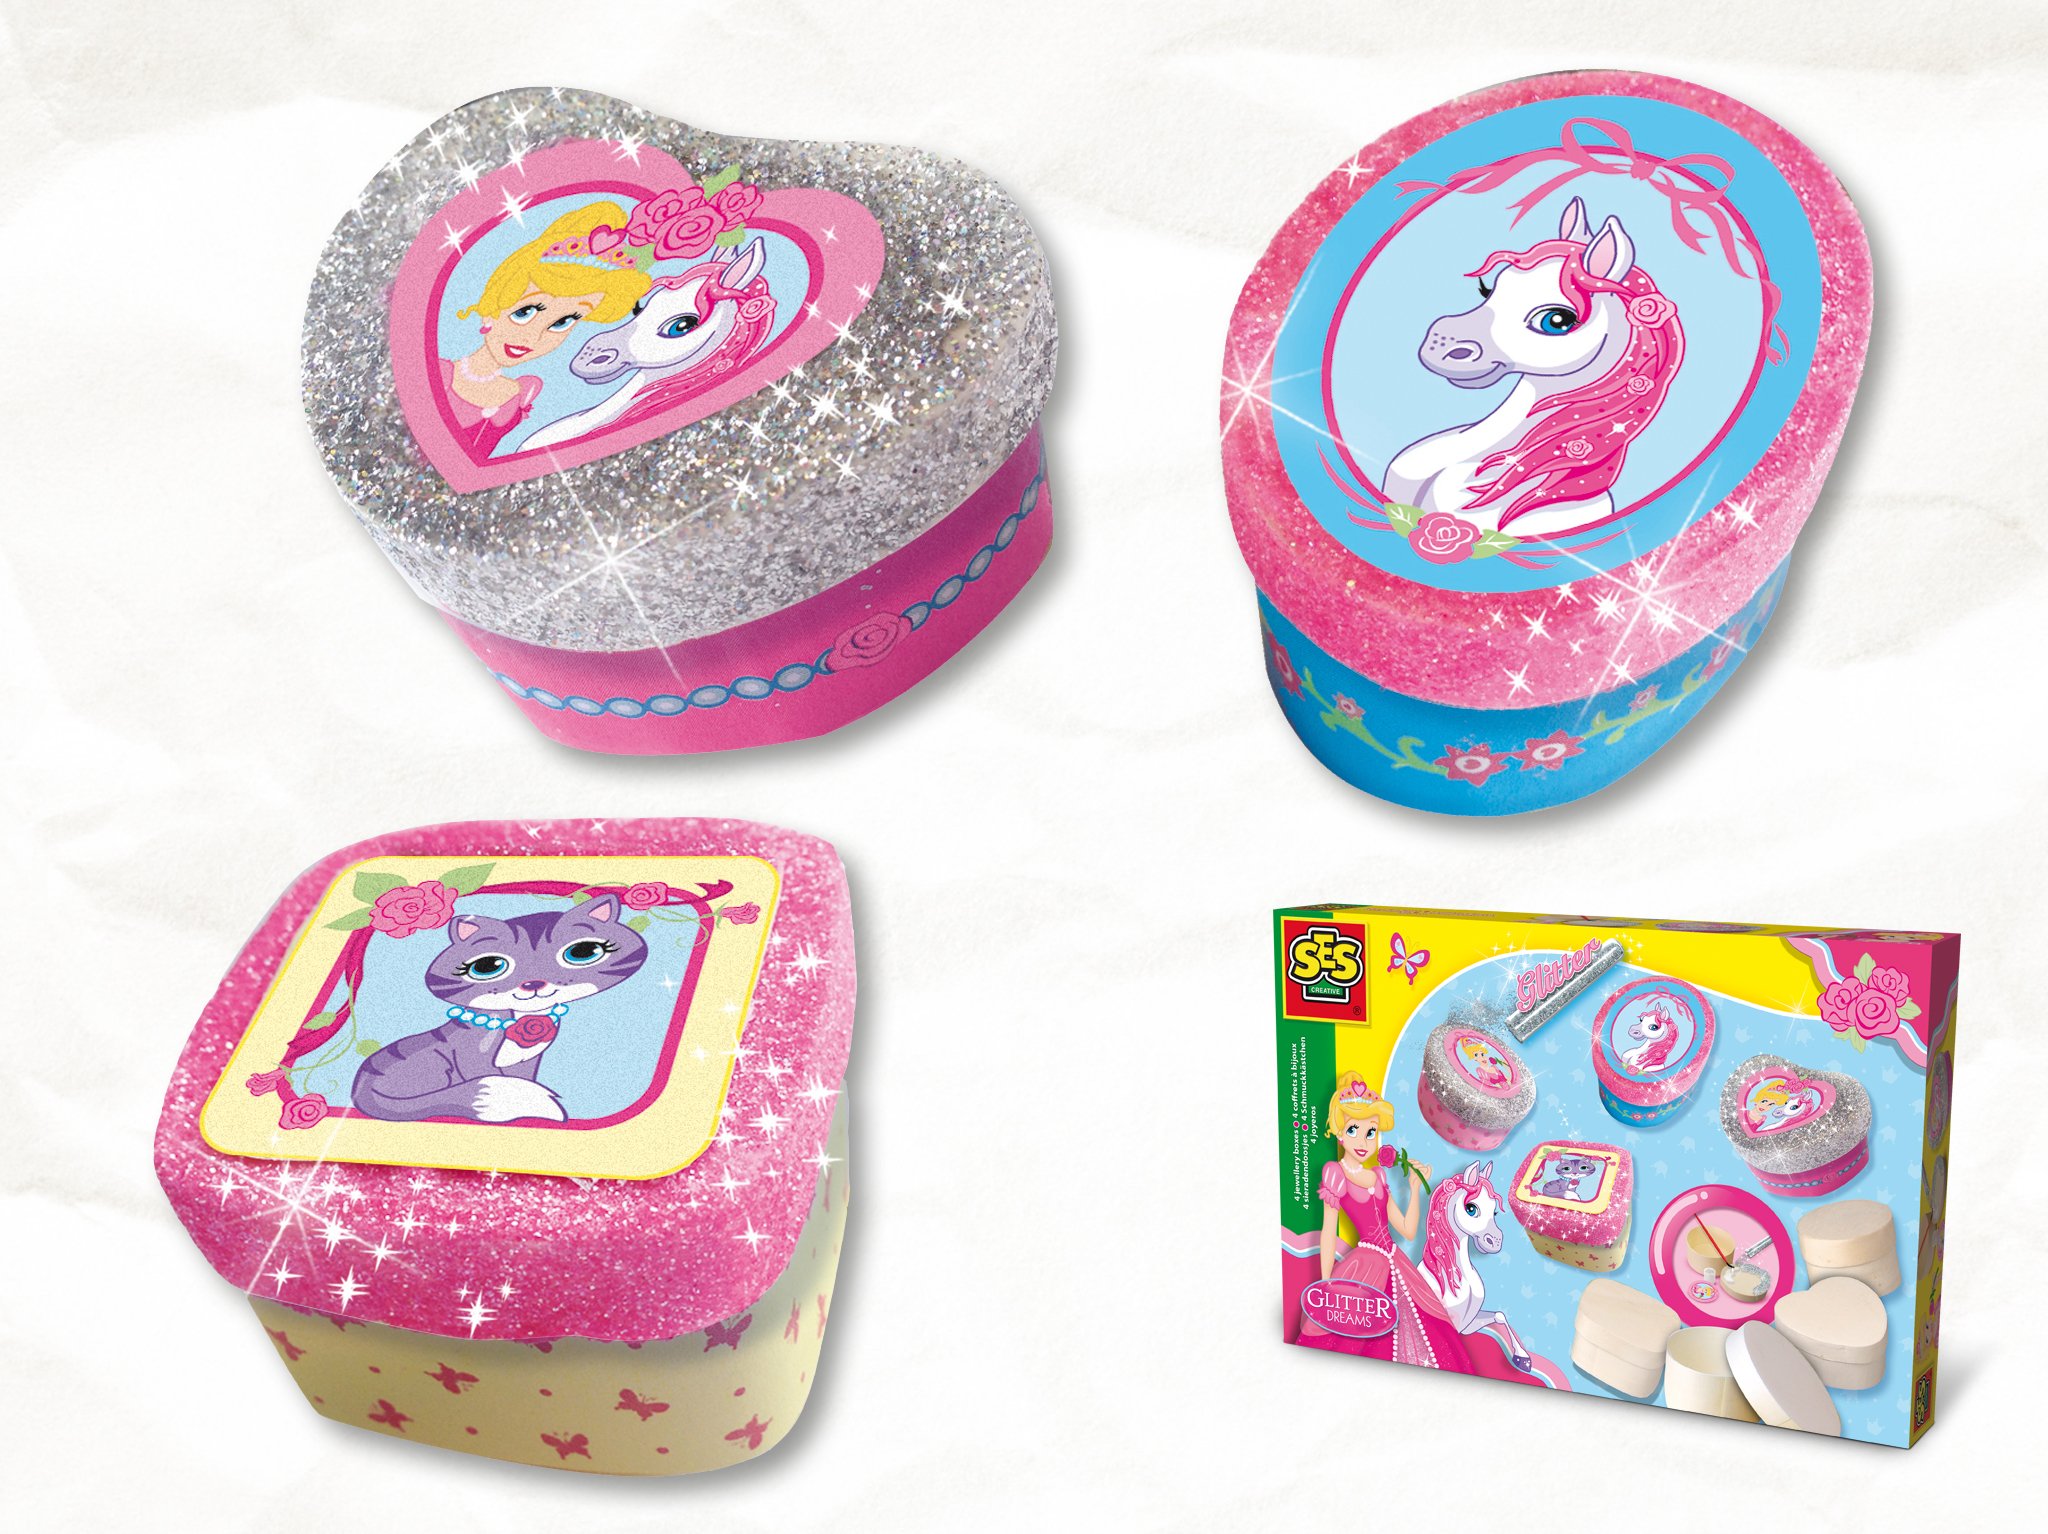 shampoo Derde Verwisselbaar SES Creative on Twitter: "De doosjes van Glitter Dreams vinden kleine  meiden prachtig, ze versieren ze helemaal naar wens met roze verf,  stickertjes en véél #glitter! https://t.co/yx8eg2RlFa" / Twitter